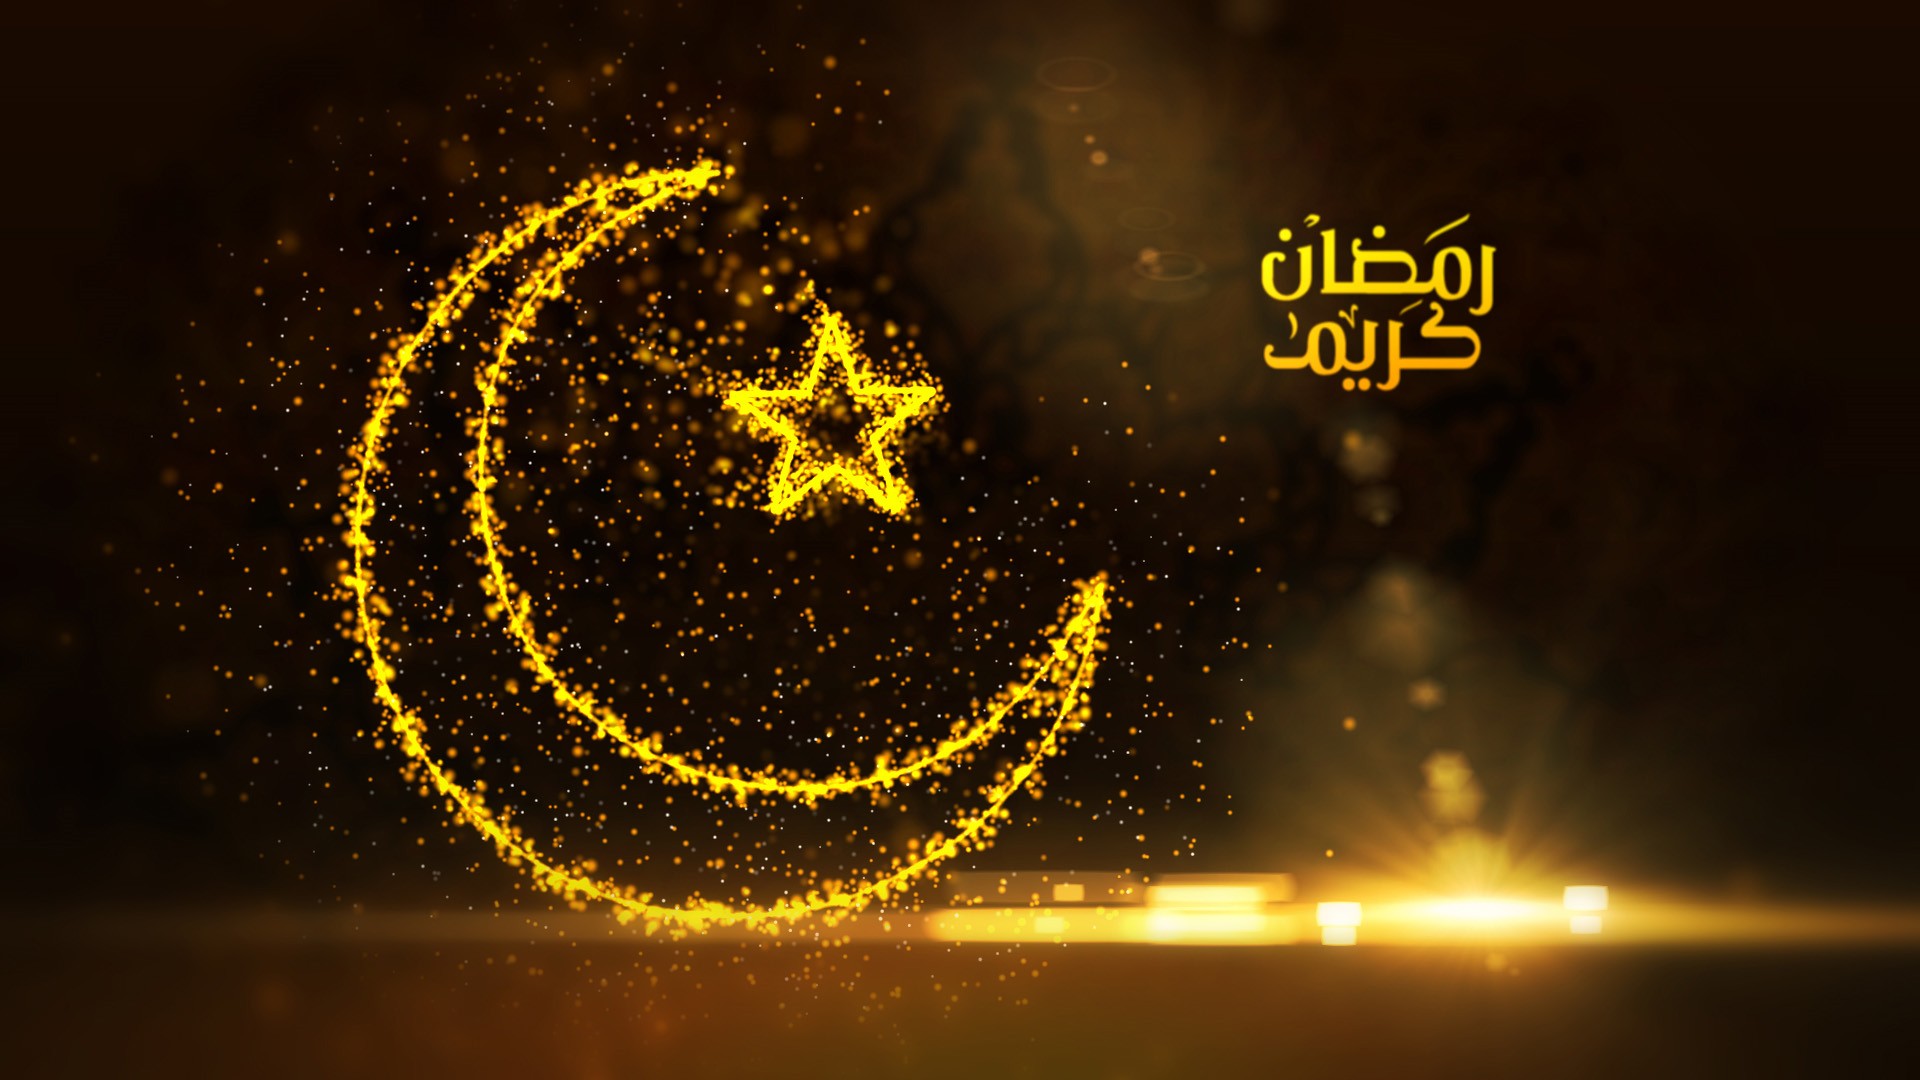 ramadan, ramadan 2020 happy ramadan, happy ramadan 2020, happy ramadan wishes, happy ramadan quotes, happy ramadan images, happy ramadan wishes images